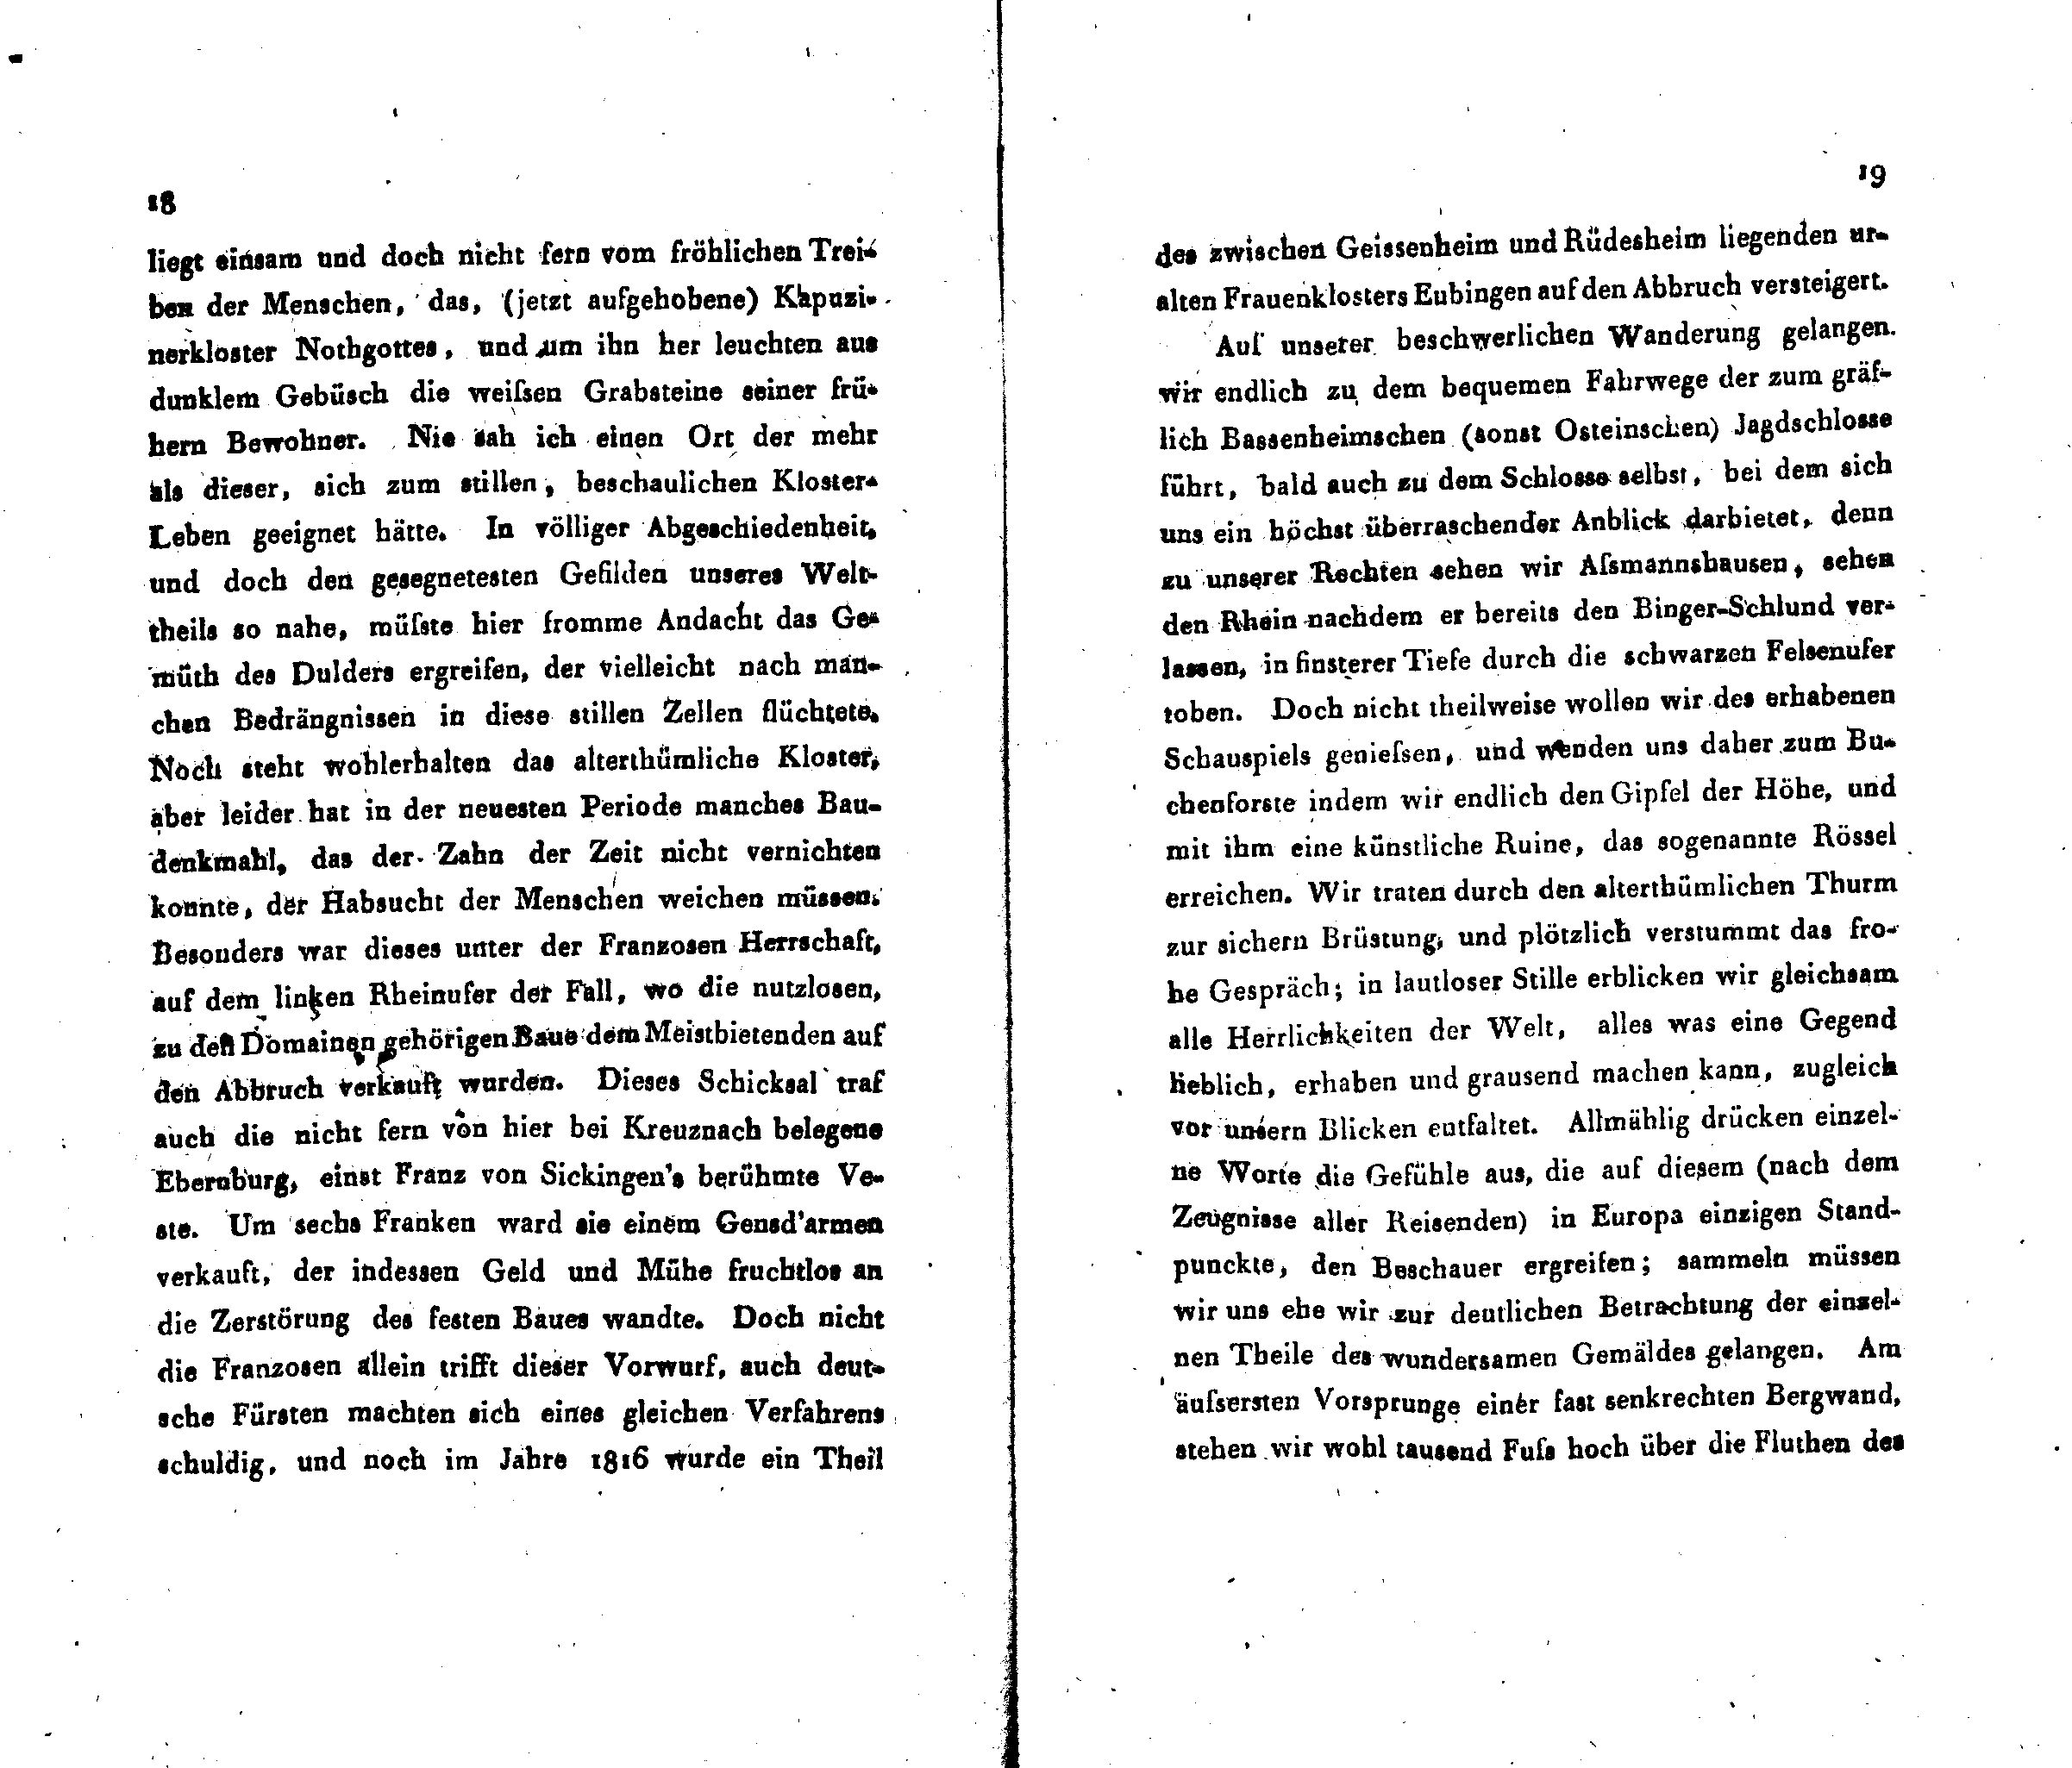 Neues Museum der teutschen Provinzen Russlands [1/3] (1825) | 11. (18-19) Основной текст